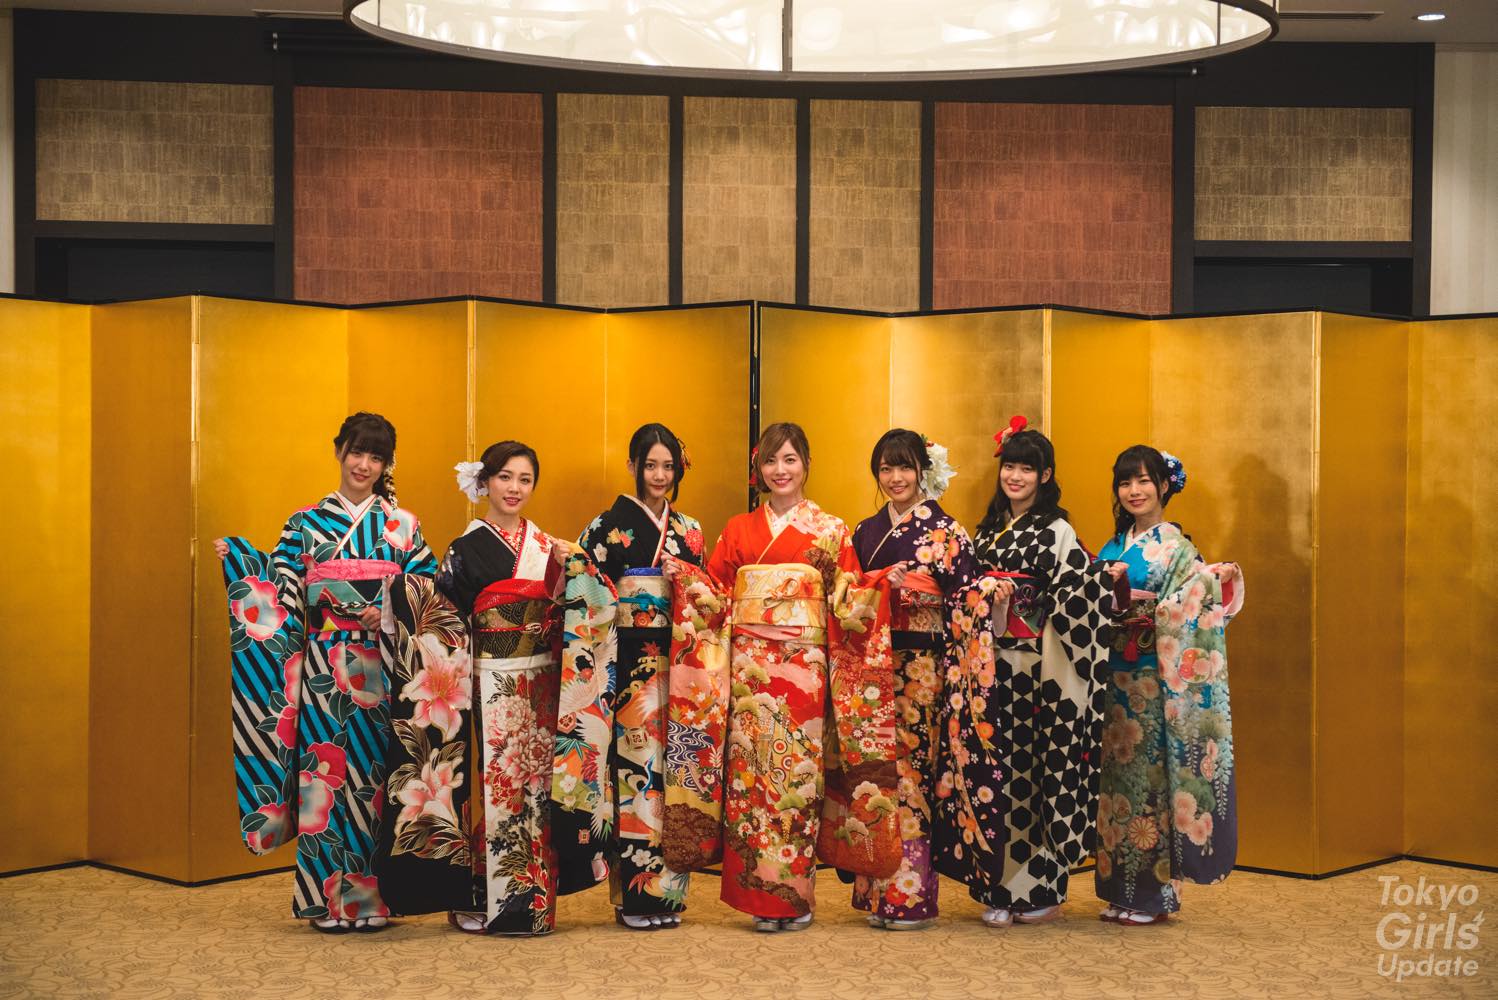 SKE48 (left to right): Natsuki Kamata (SKE48 Team E), Anna Ishida (SKE48 Team KII), Nao Furuhata (SKE48 Team KII), Jurina Matsui (SKE48 Team S), Haruka Futamura (SKE48 Team S), Rion Azuma (SKE48 Team S), Shiori Aoki (SKE48 Team KII)